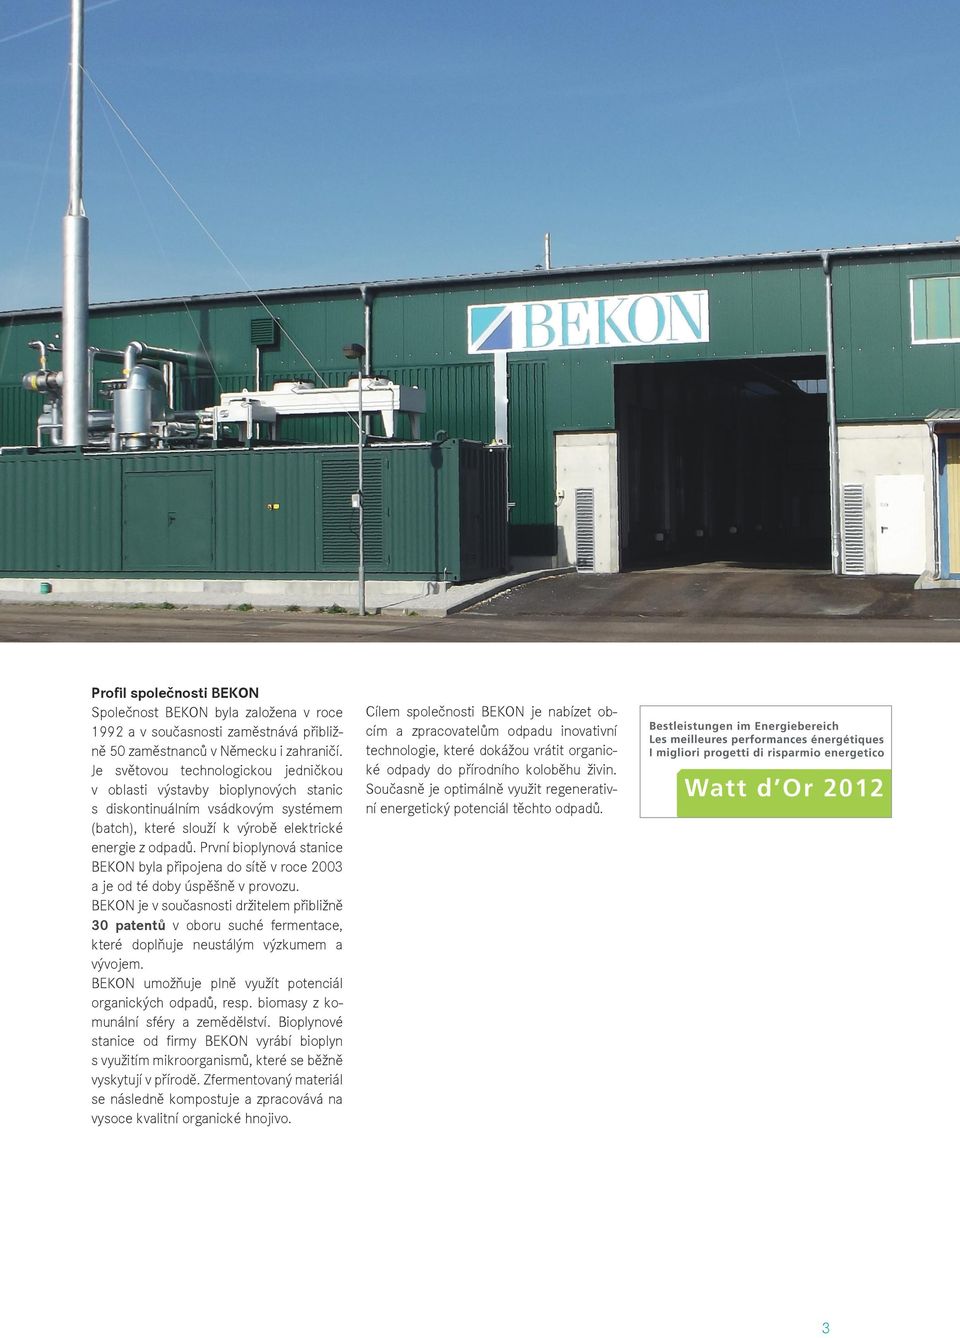 První bioplynová stanice BEKON byla připojena do sítě v roce 2003 a je od té doby úspěšně v provozu.